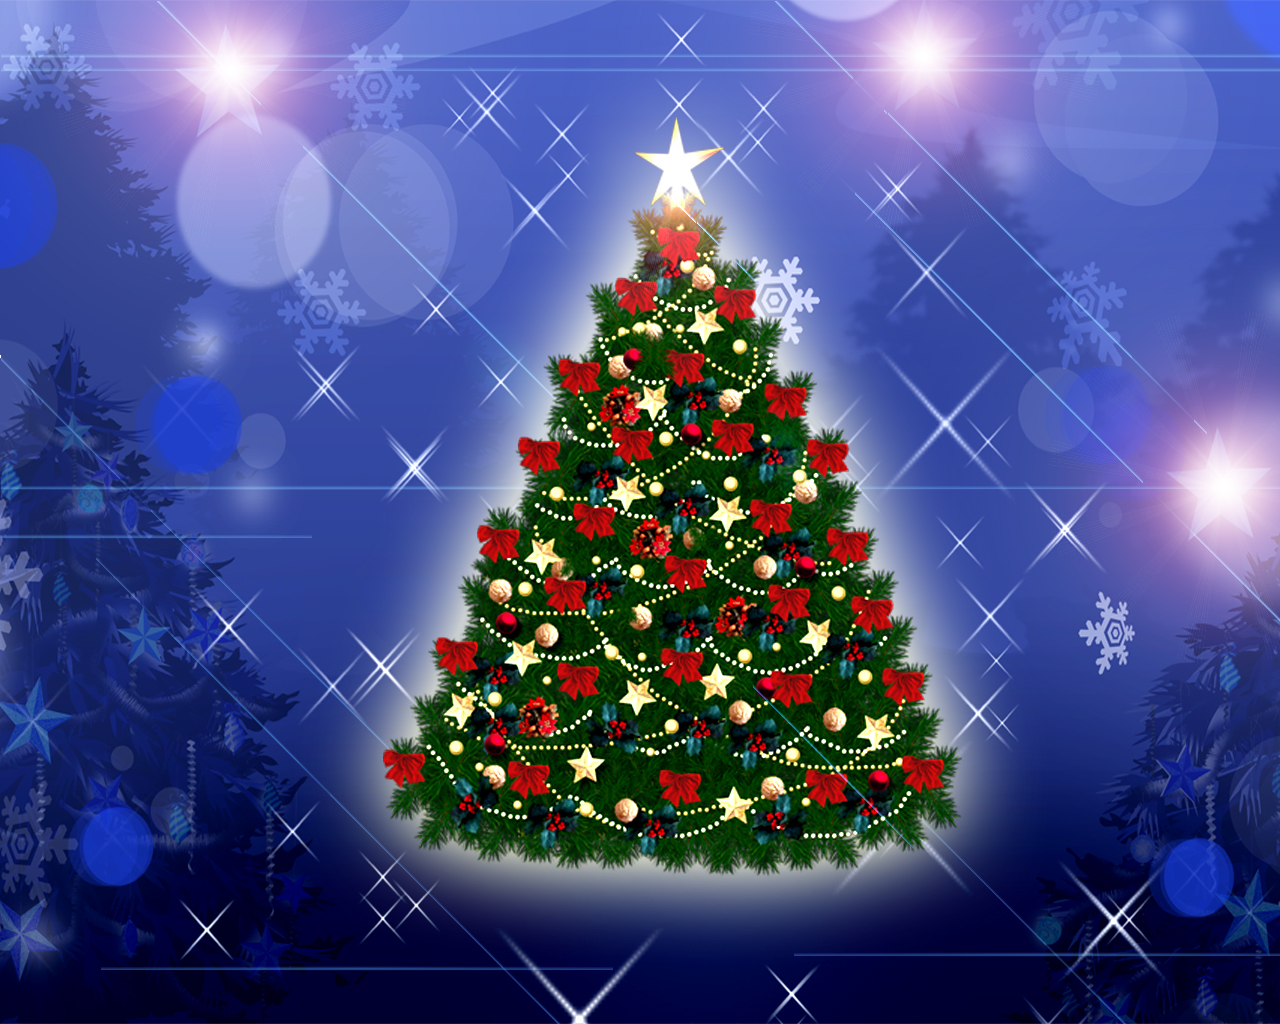 sfondo del computer portatile di natale,albero di natale,decorazione natalizia,natale,ornamento di natale,abete rosso colorado